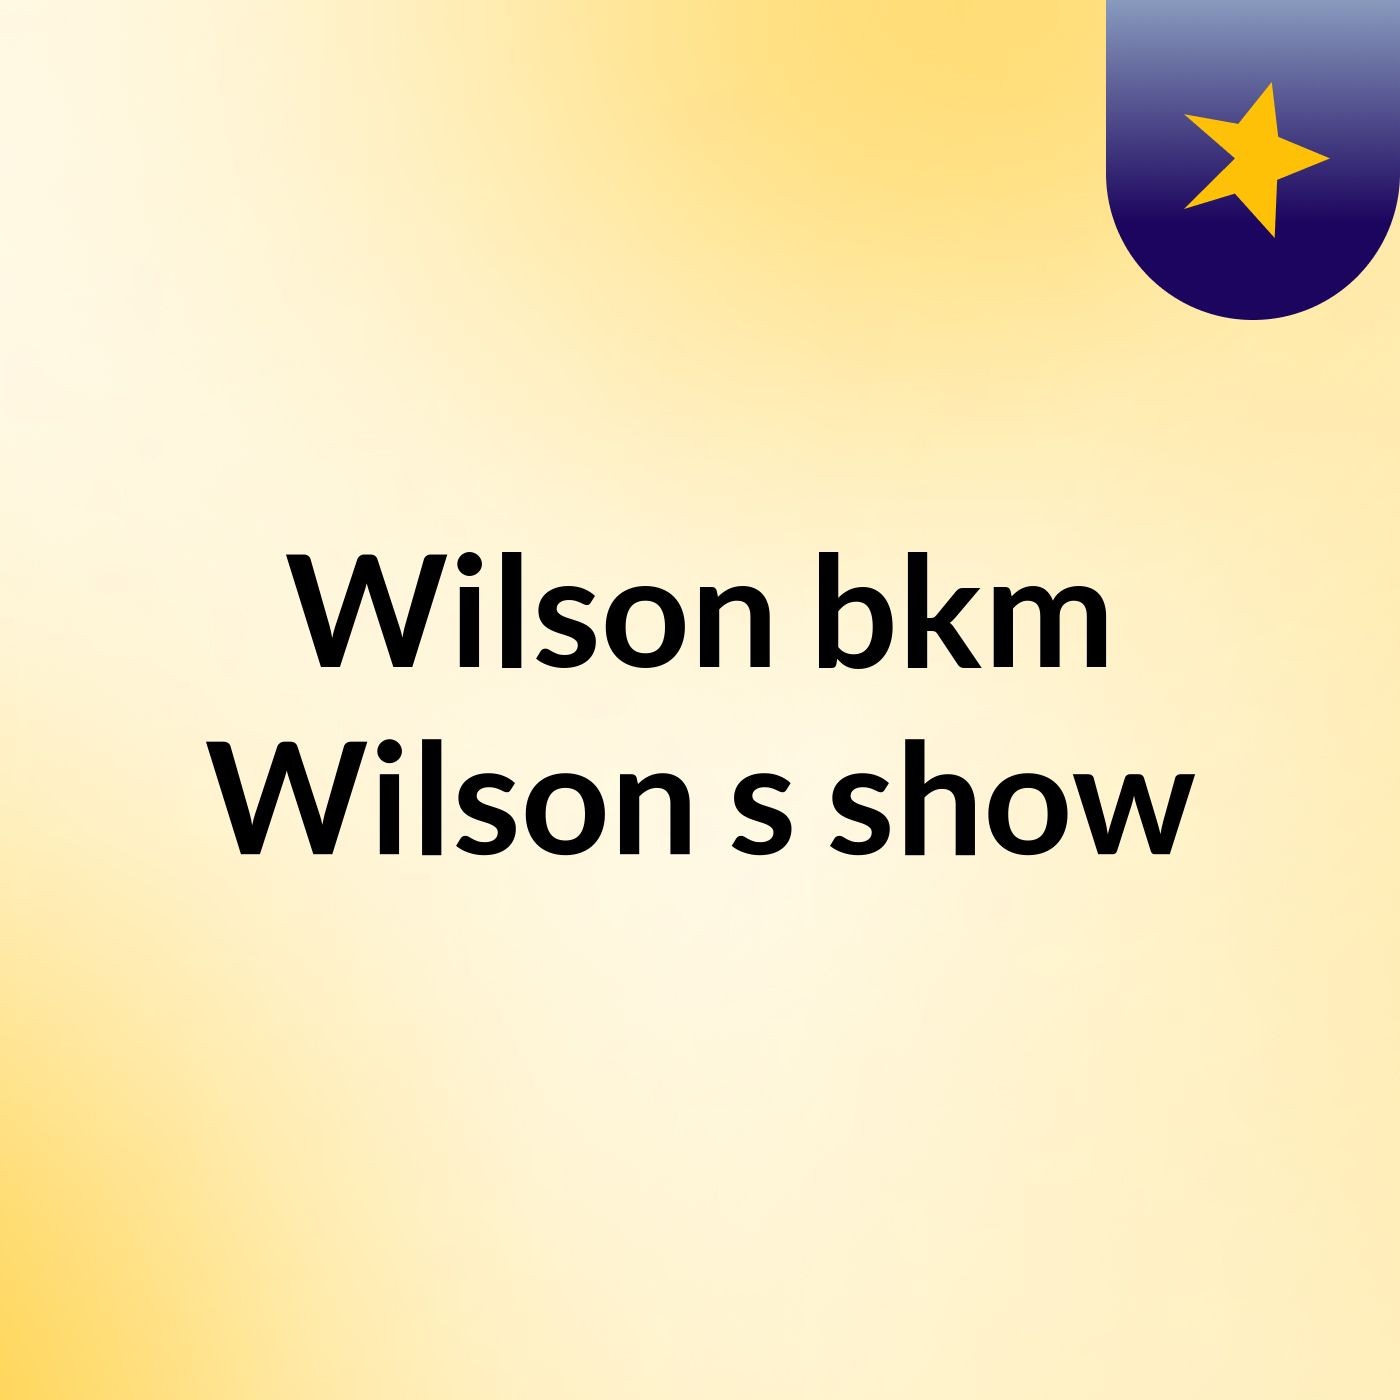 Wilson bkm Wilson's show